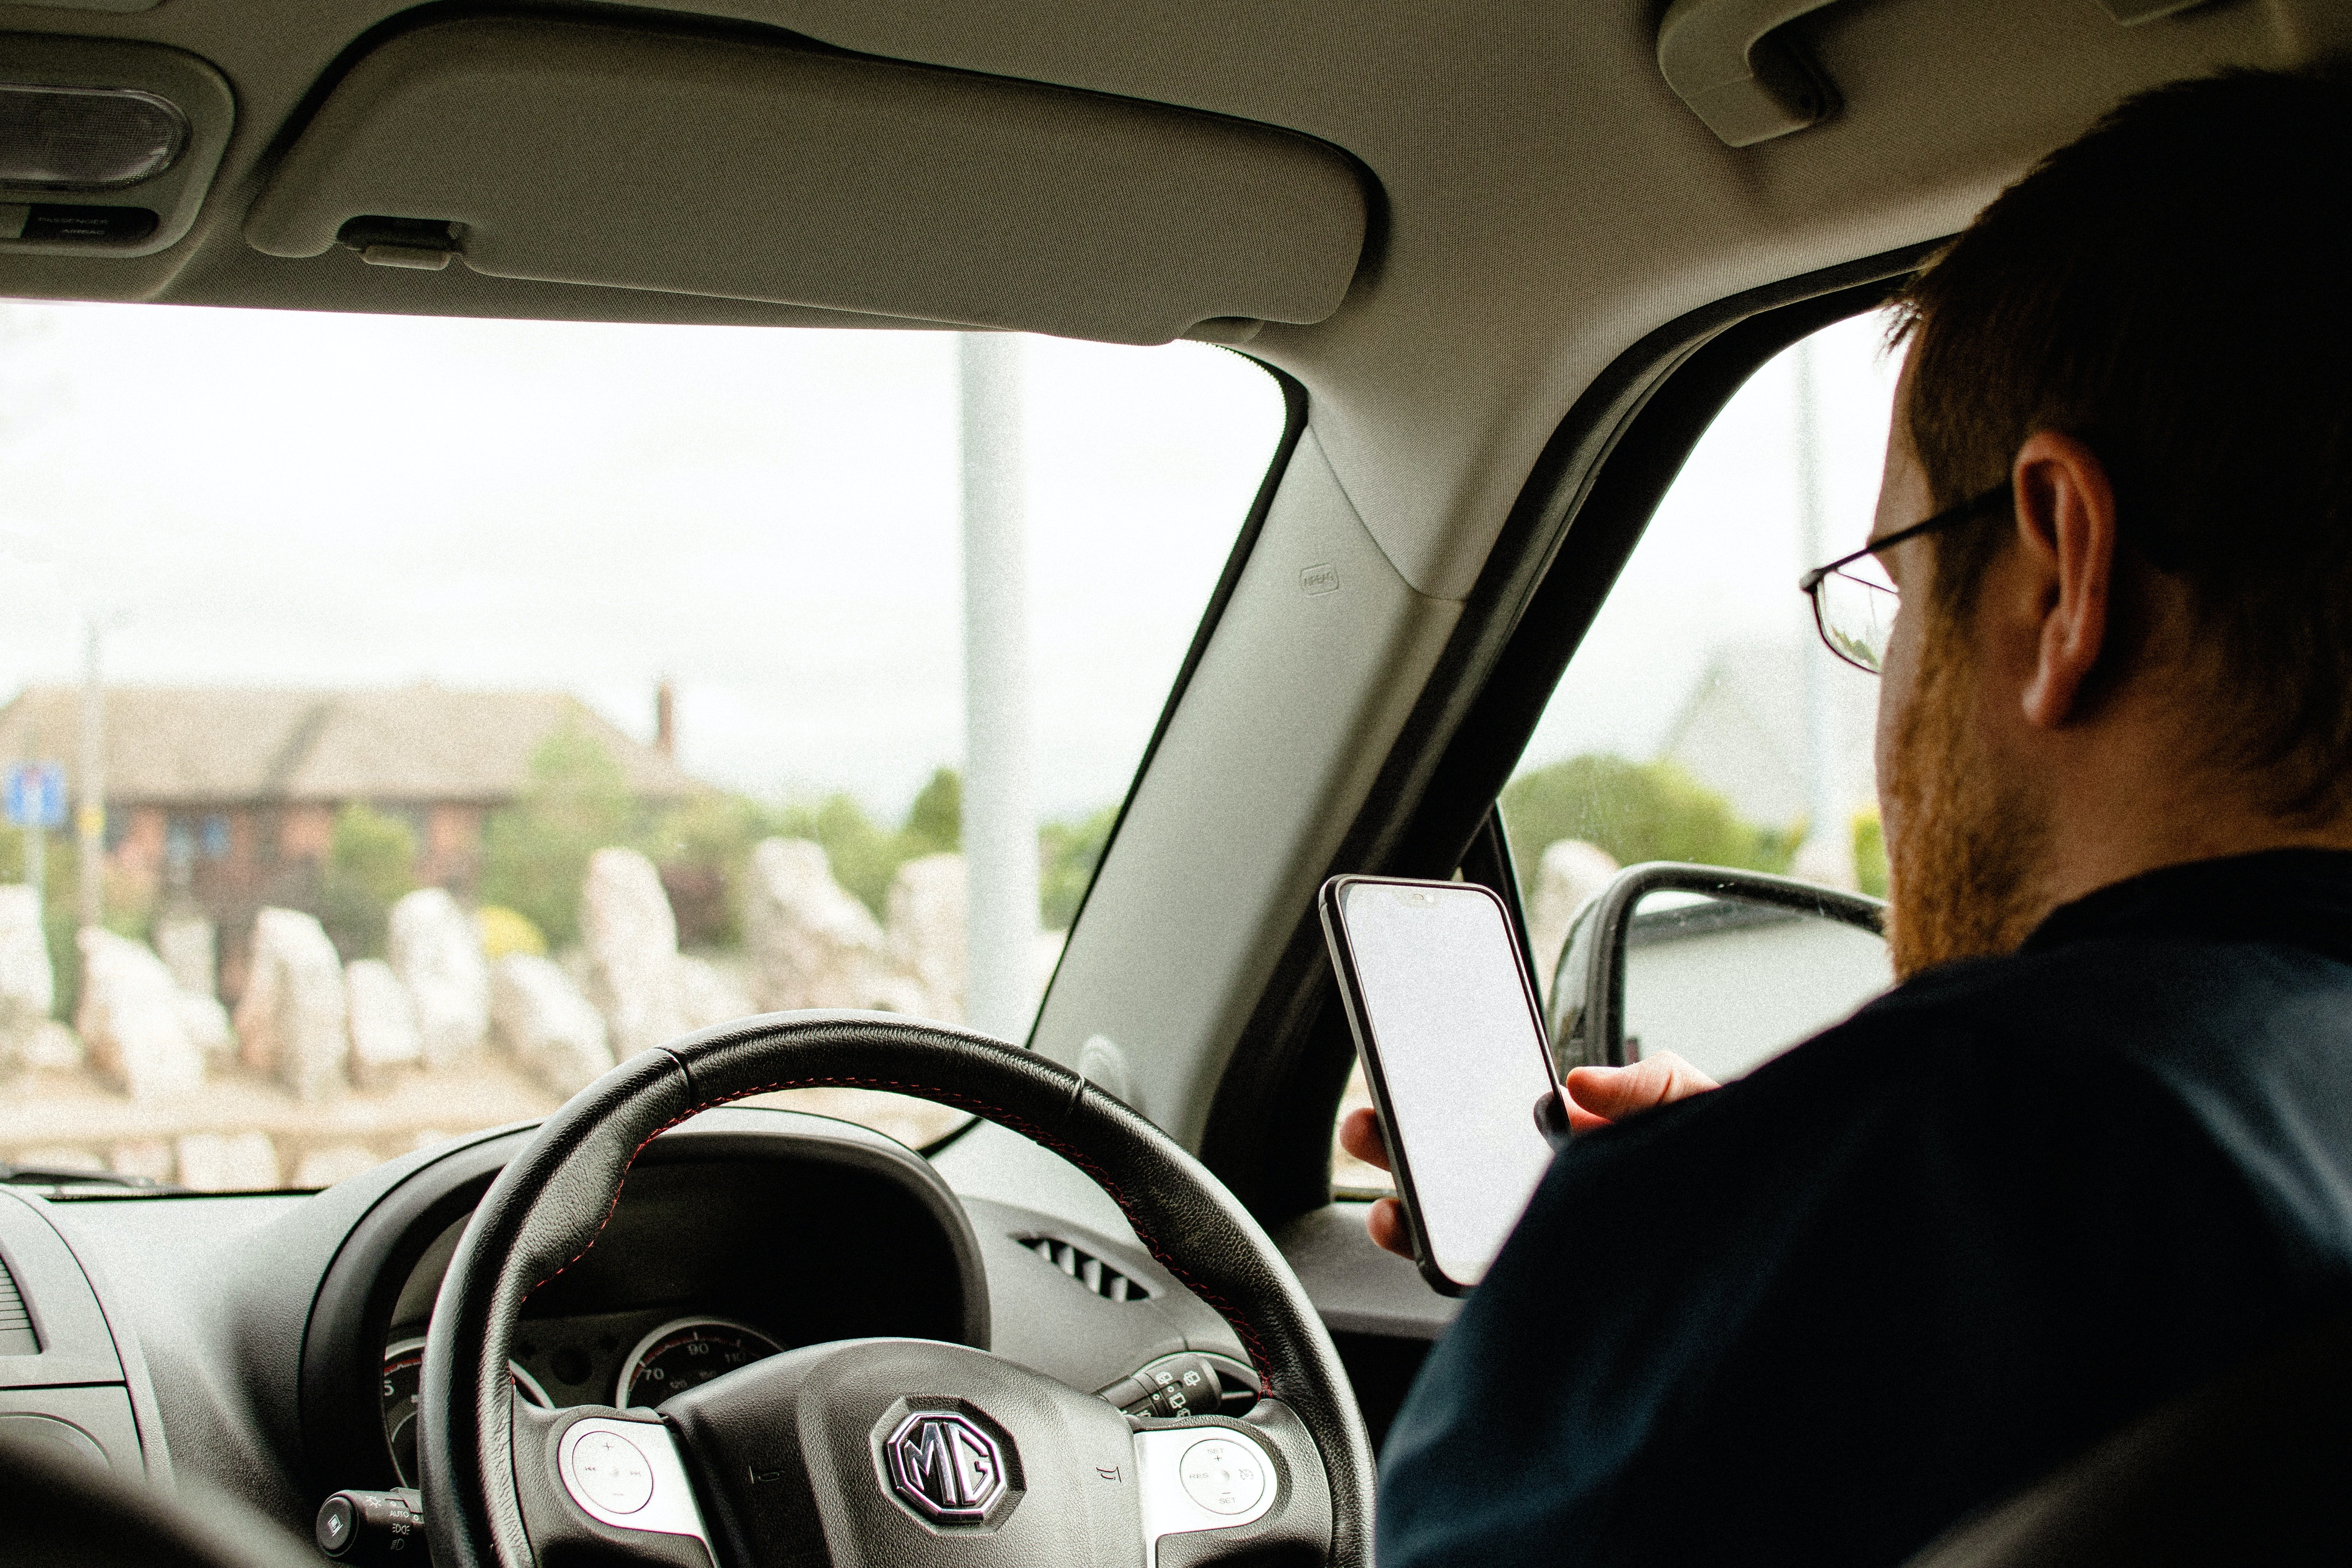 Un hombre revisa un teléfono celular en el interior de un vehículo. | Foto: Pexels